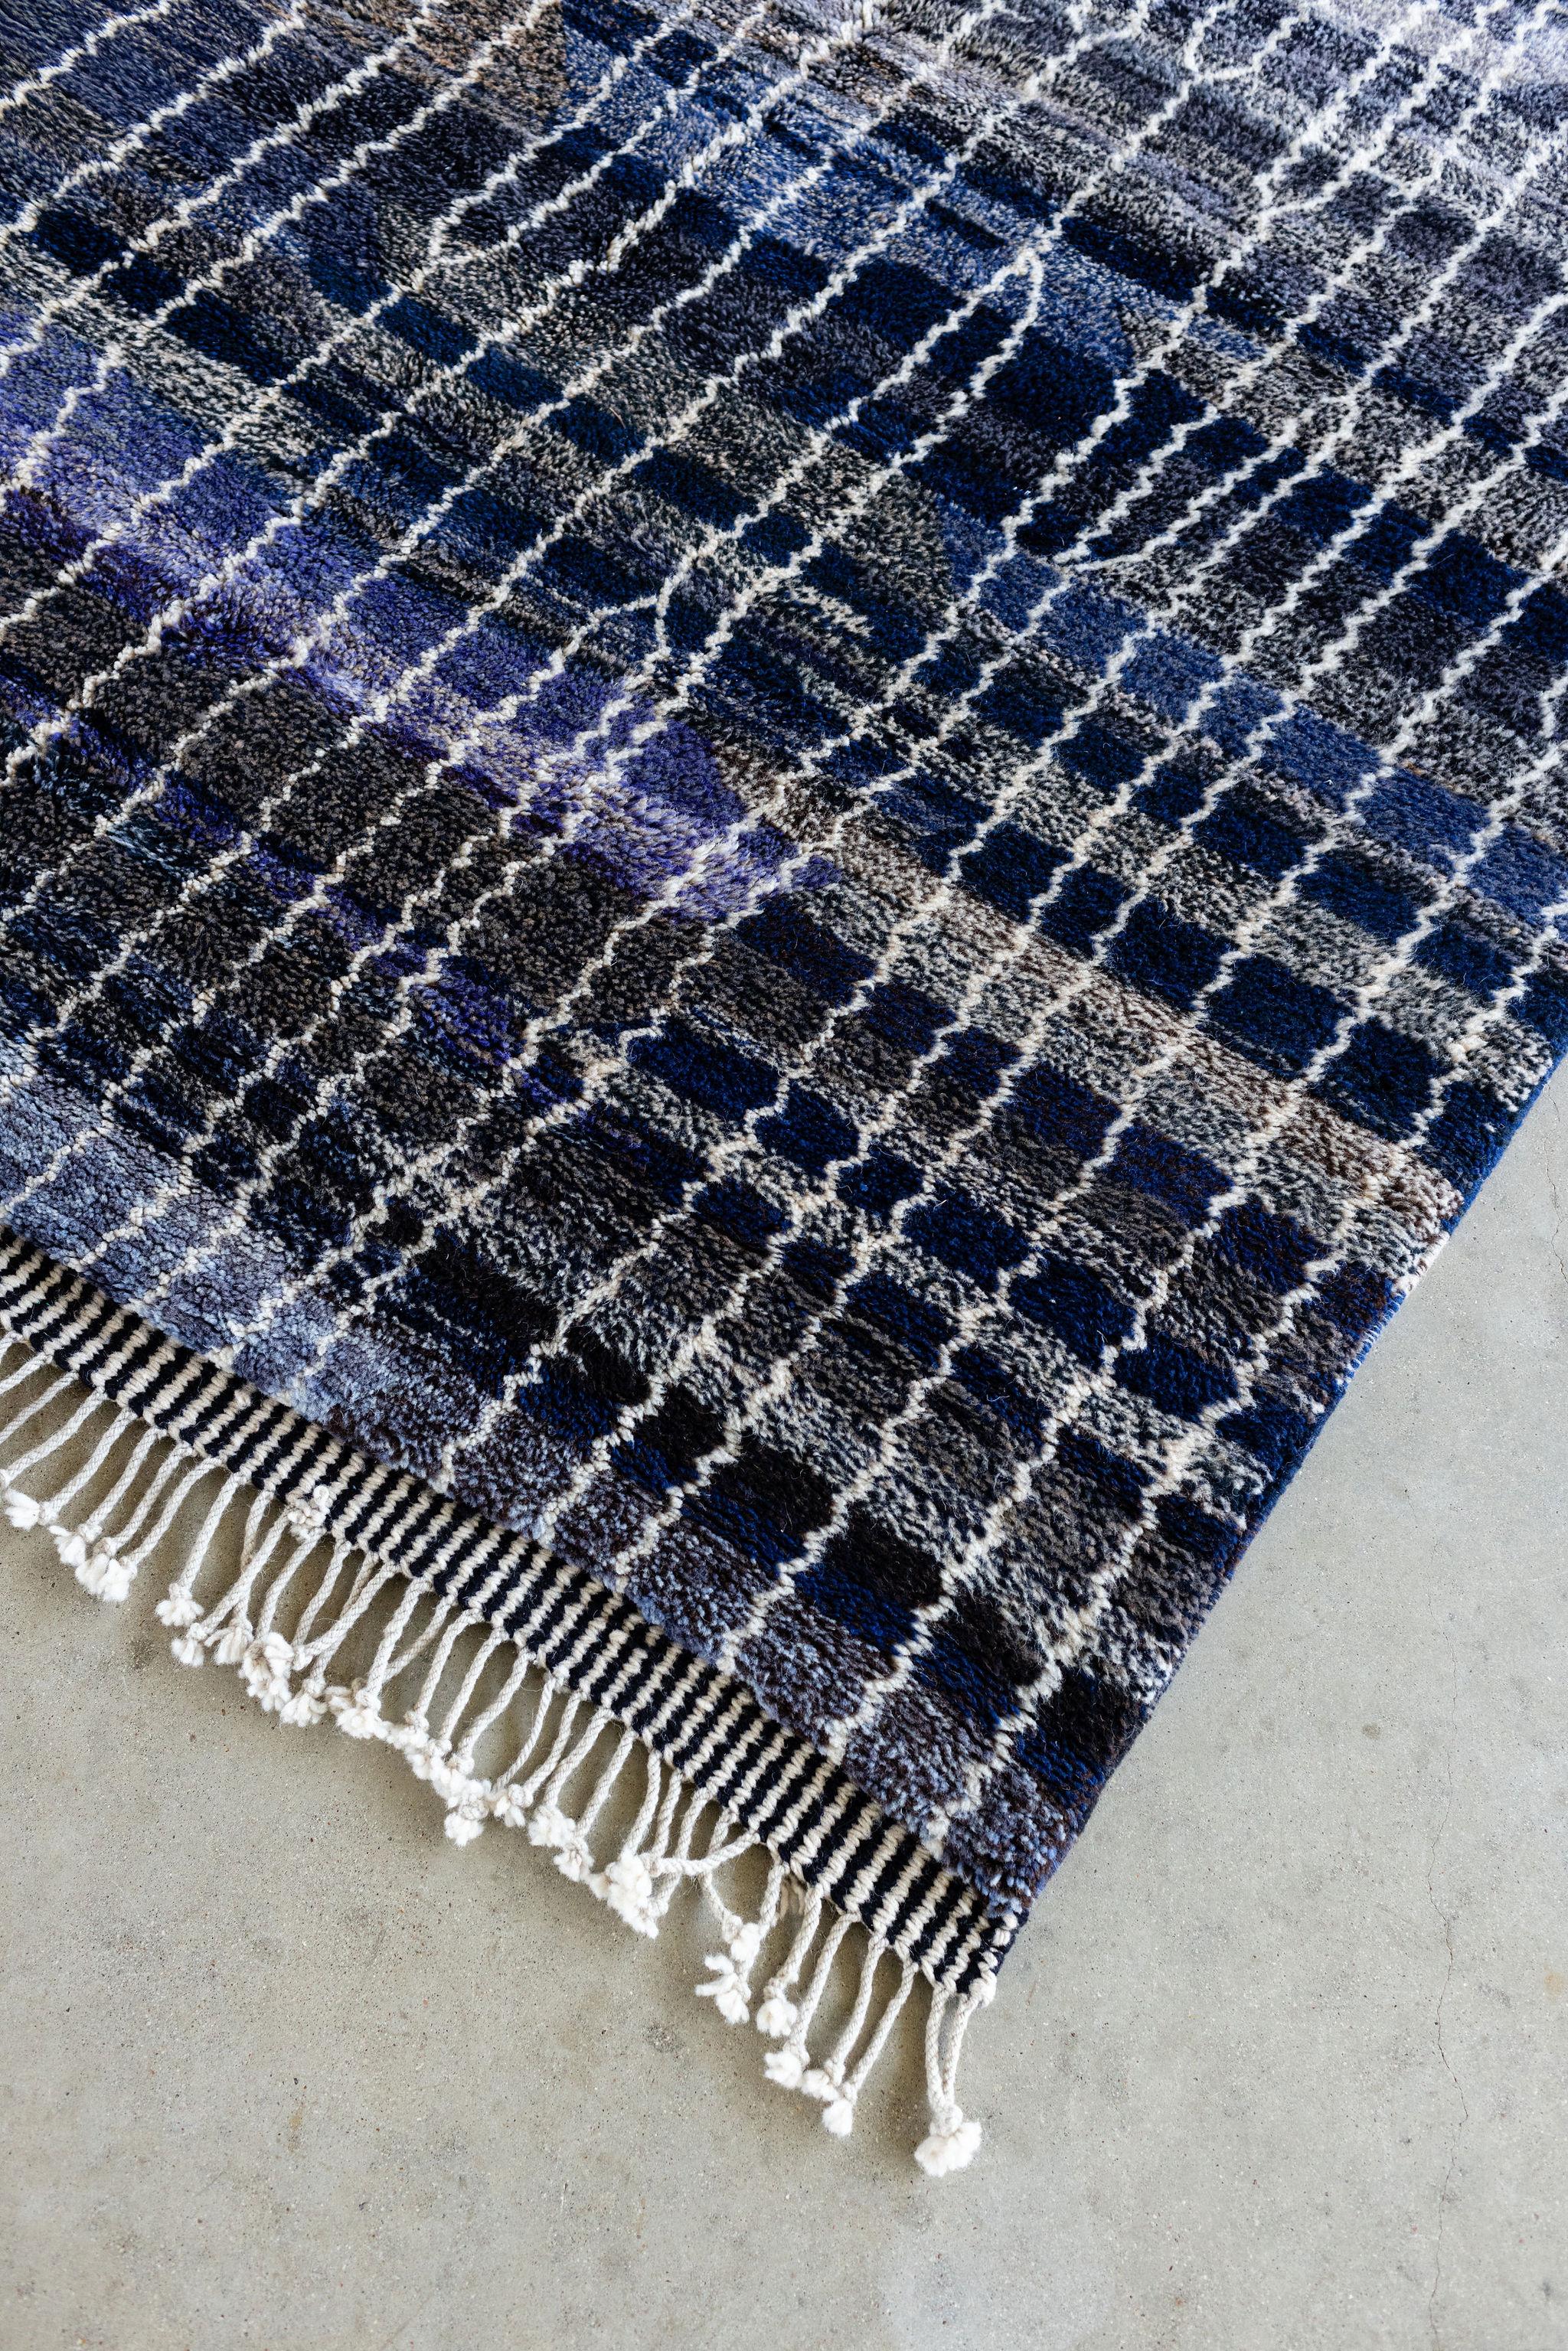 Tapis marocain Beni M'rirt bleu vintage.

Un tapis en peluche unique en son genre, fabriqué à partir de la laine de mouton la plus fine de Nouvelle-Zélande et tissé à la main par les femmes de la tribu des Beni M'rirts au Maroc. Matériau pur et